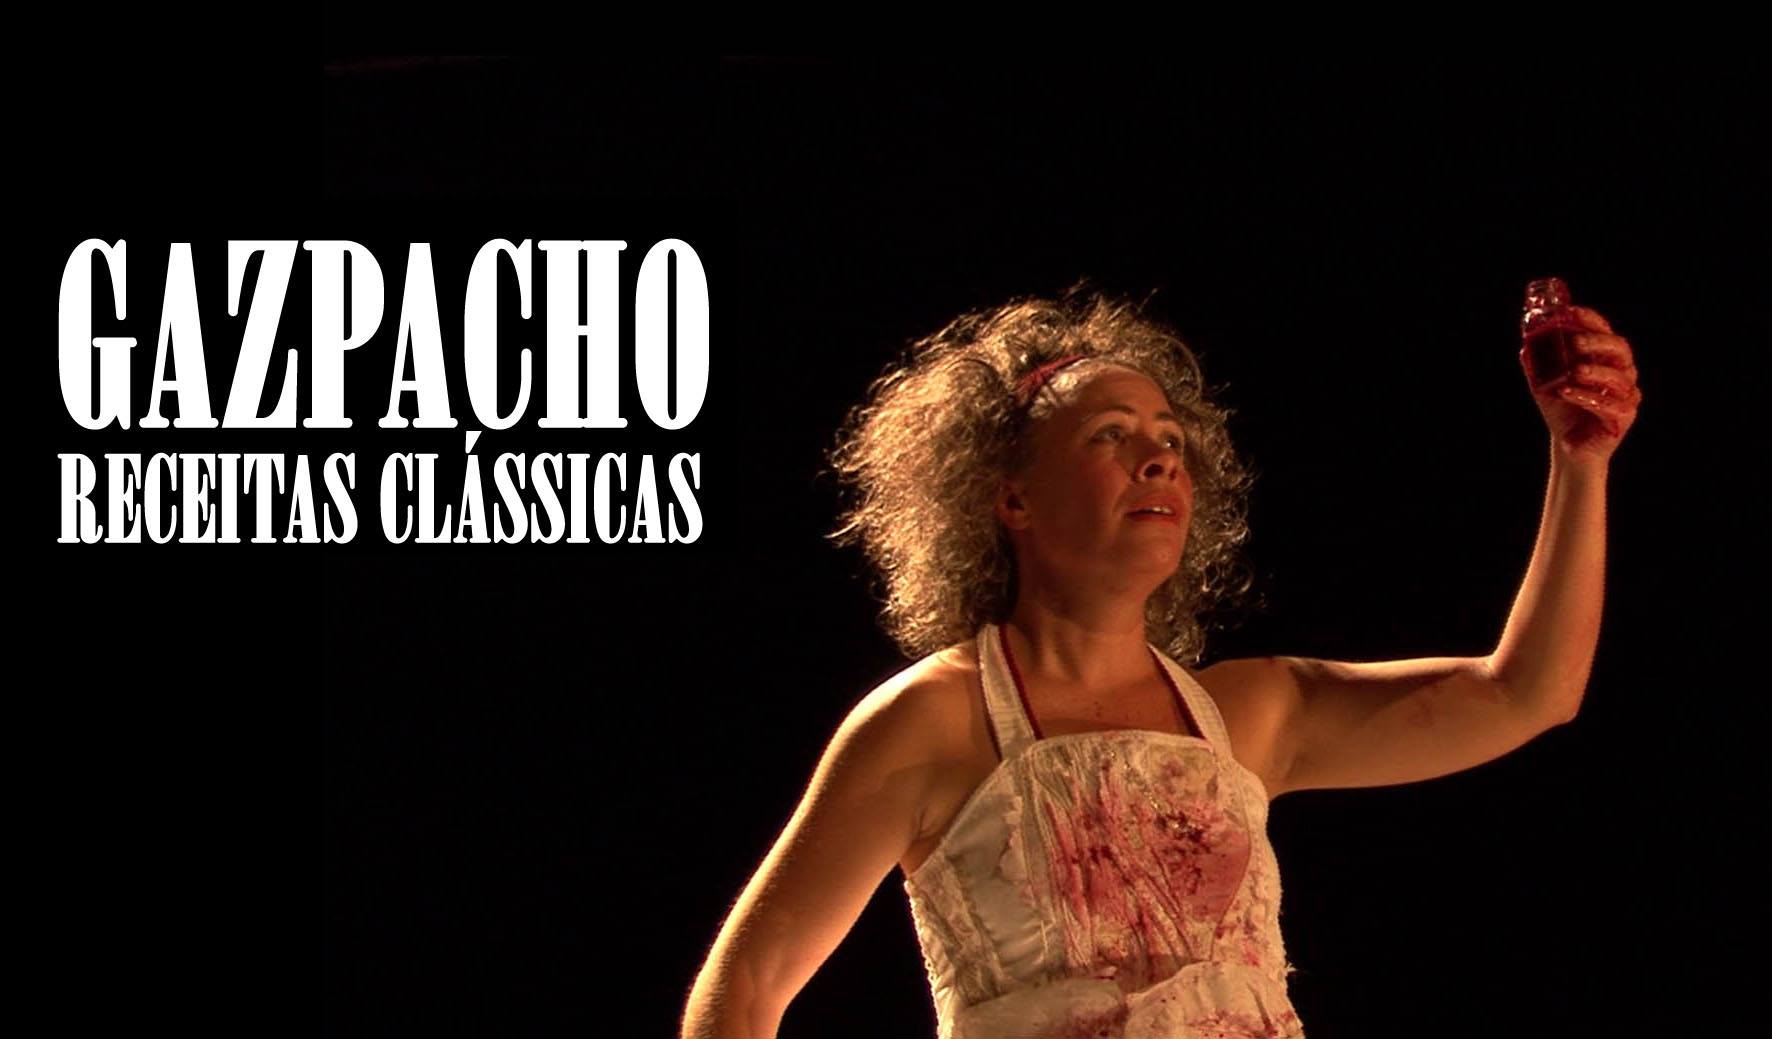 Gazpacho: "Recettes classiques"